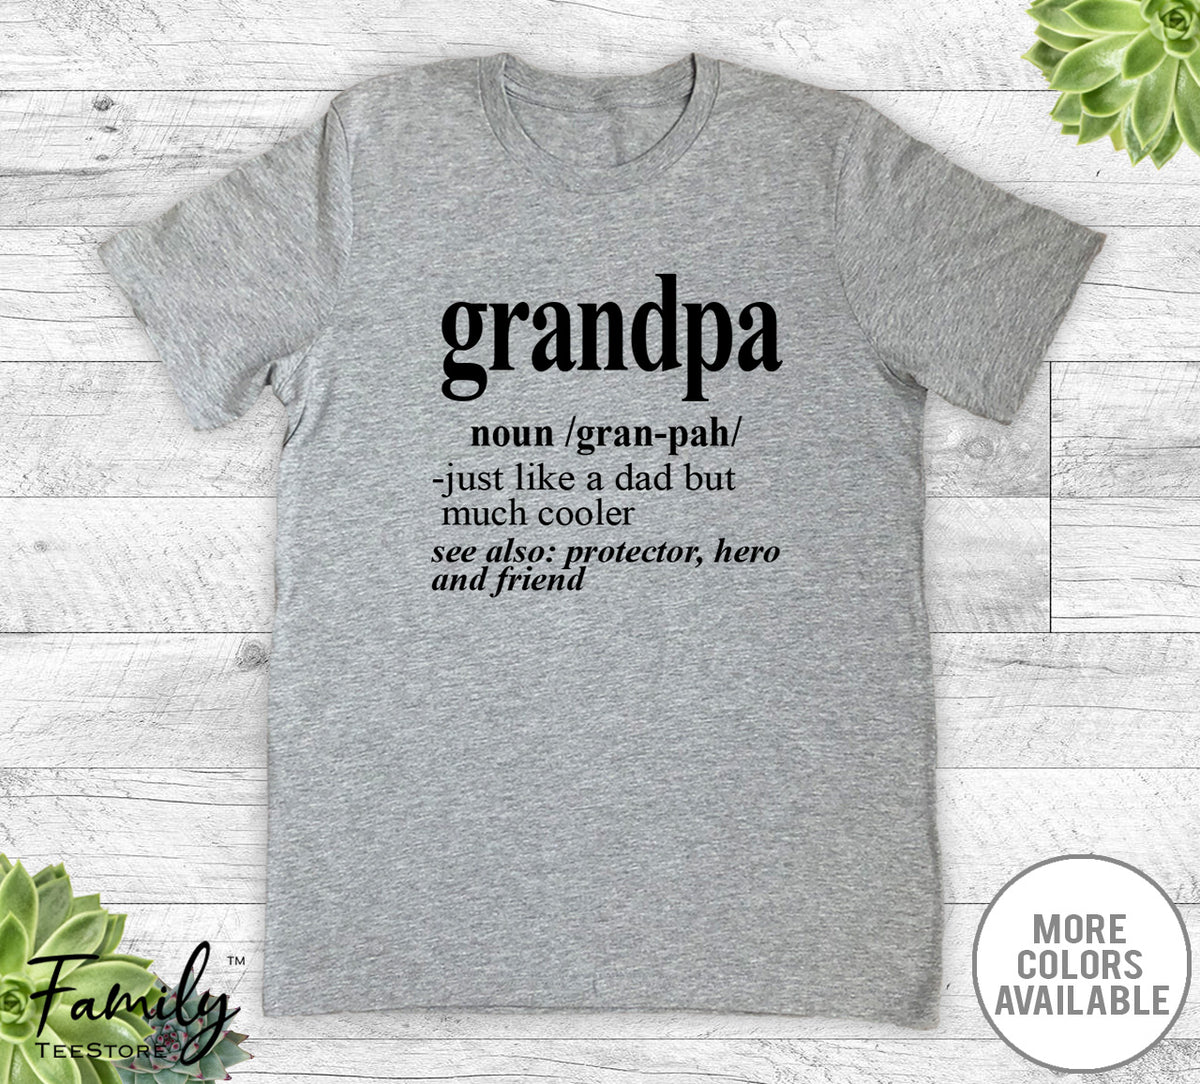 Grandpa Noun - Unisex T-shirt - Grandpa Shirt - Grandpa Gift - familyteeprints